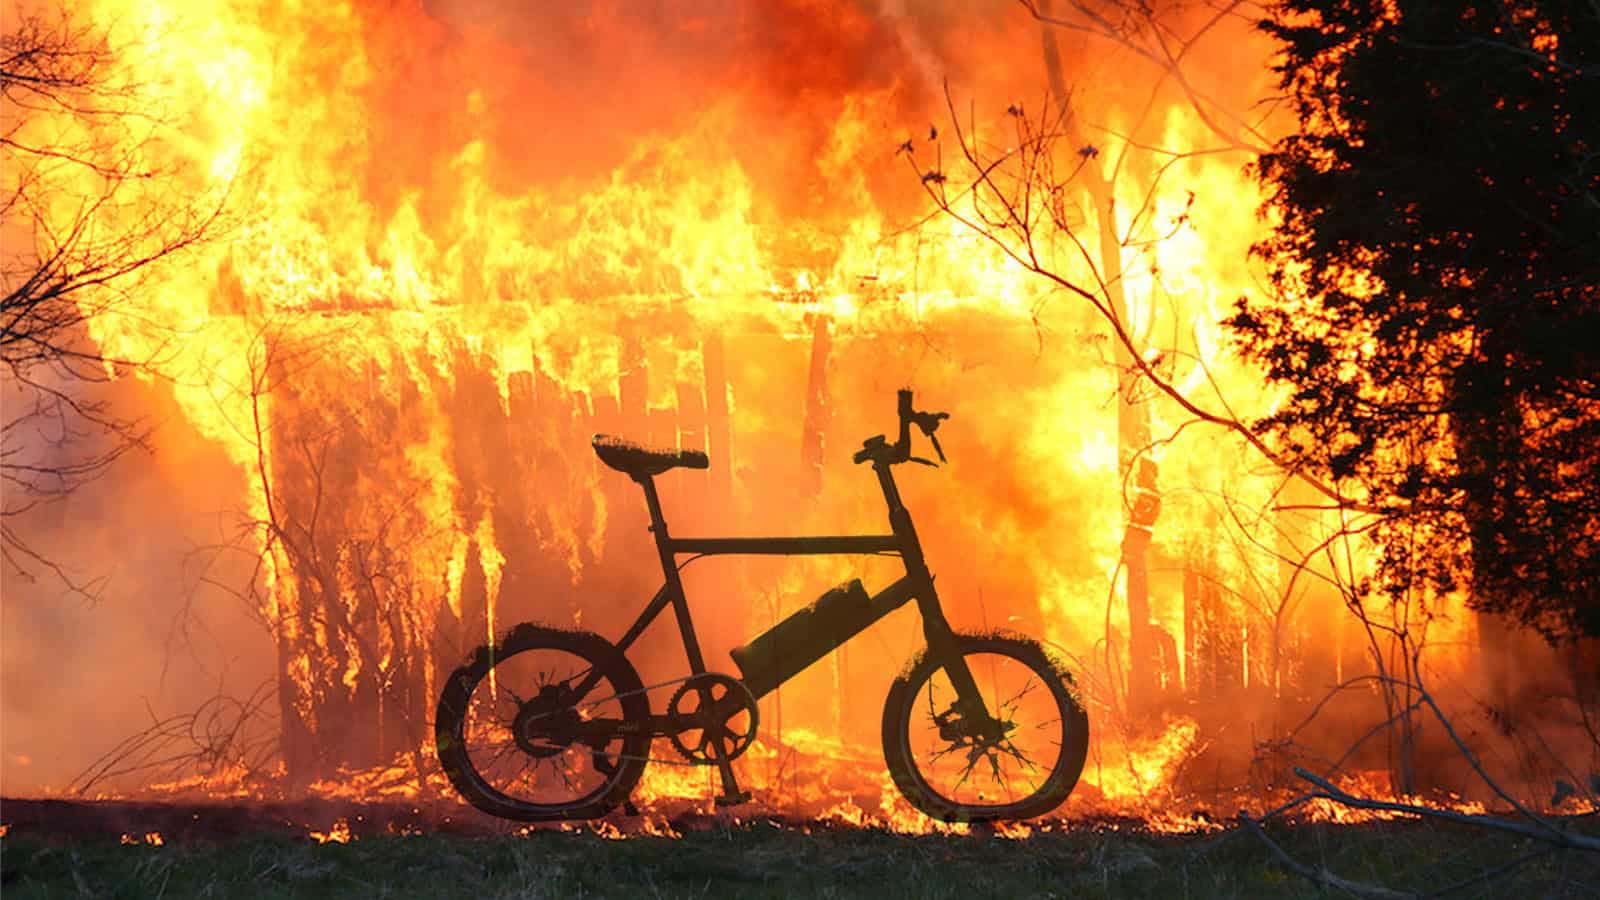 Fiamme e biciclette elettriche, l'emergenza che richiede azioni immediate